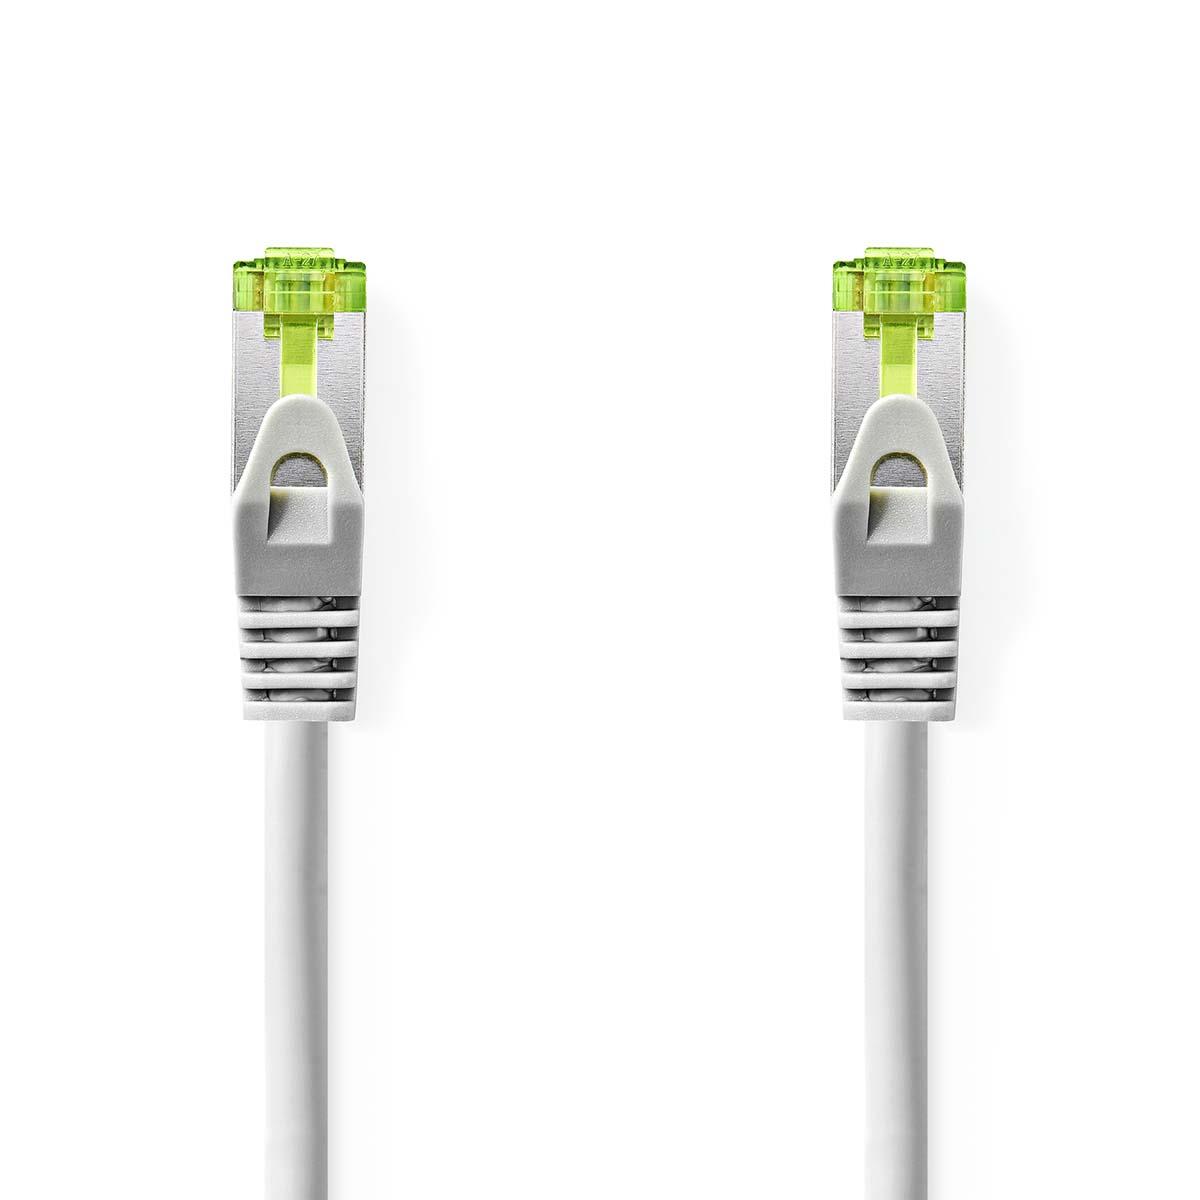 Cable ethernet rj45(8p8c) cat7 (10000 mbit/s) gris 1.0m